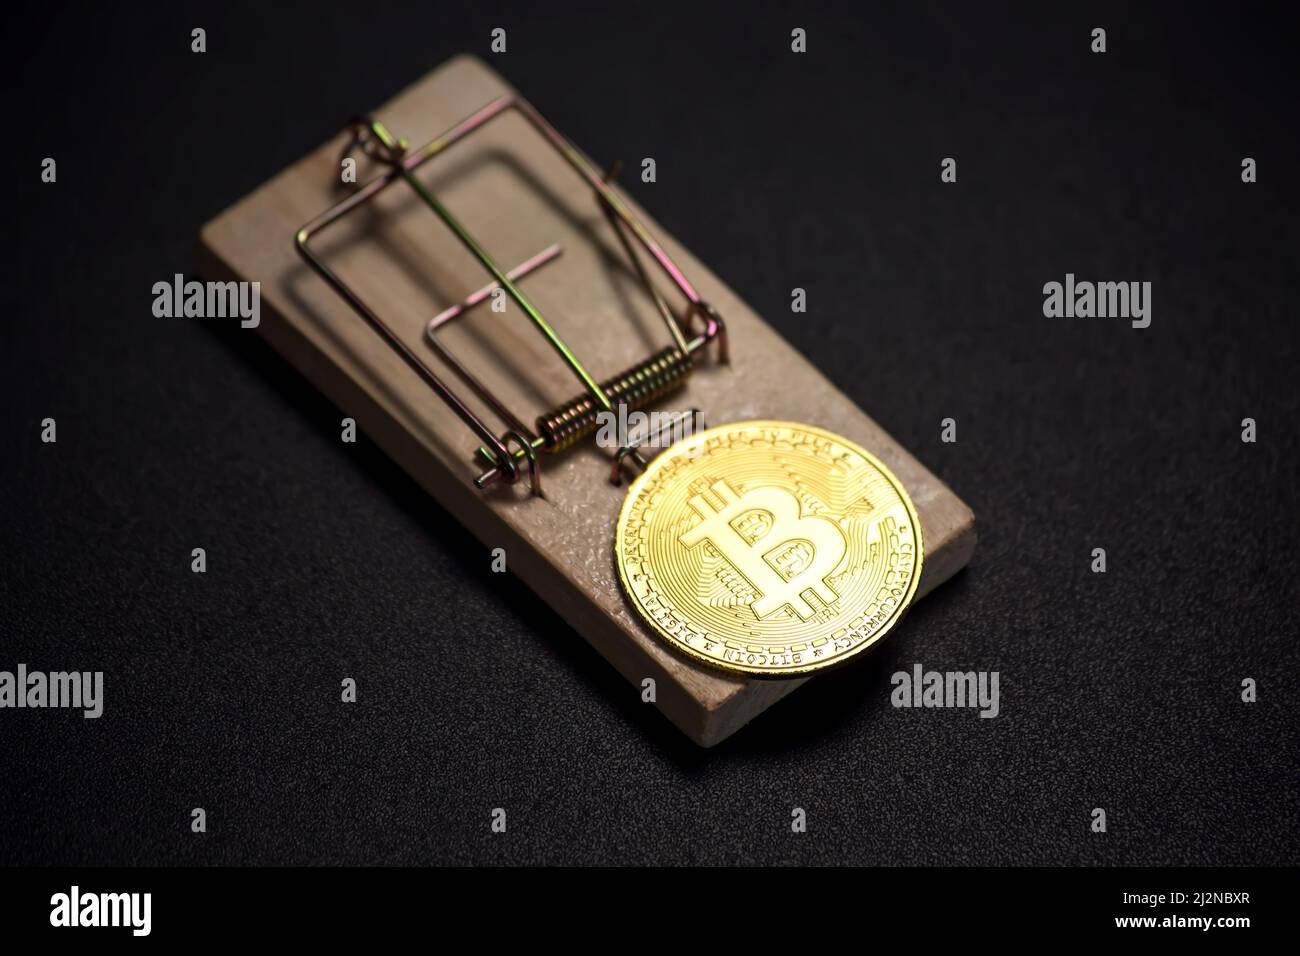 Bitcoin sur un mousetrap. Risques et dangers liés à l'investissement dans la crypto-monnaie Banque D'Images